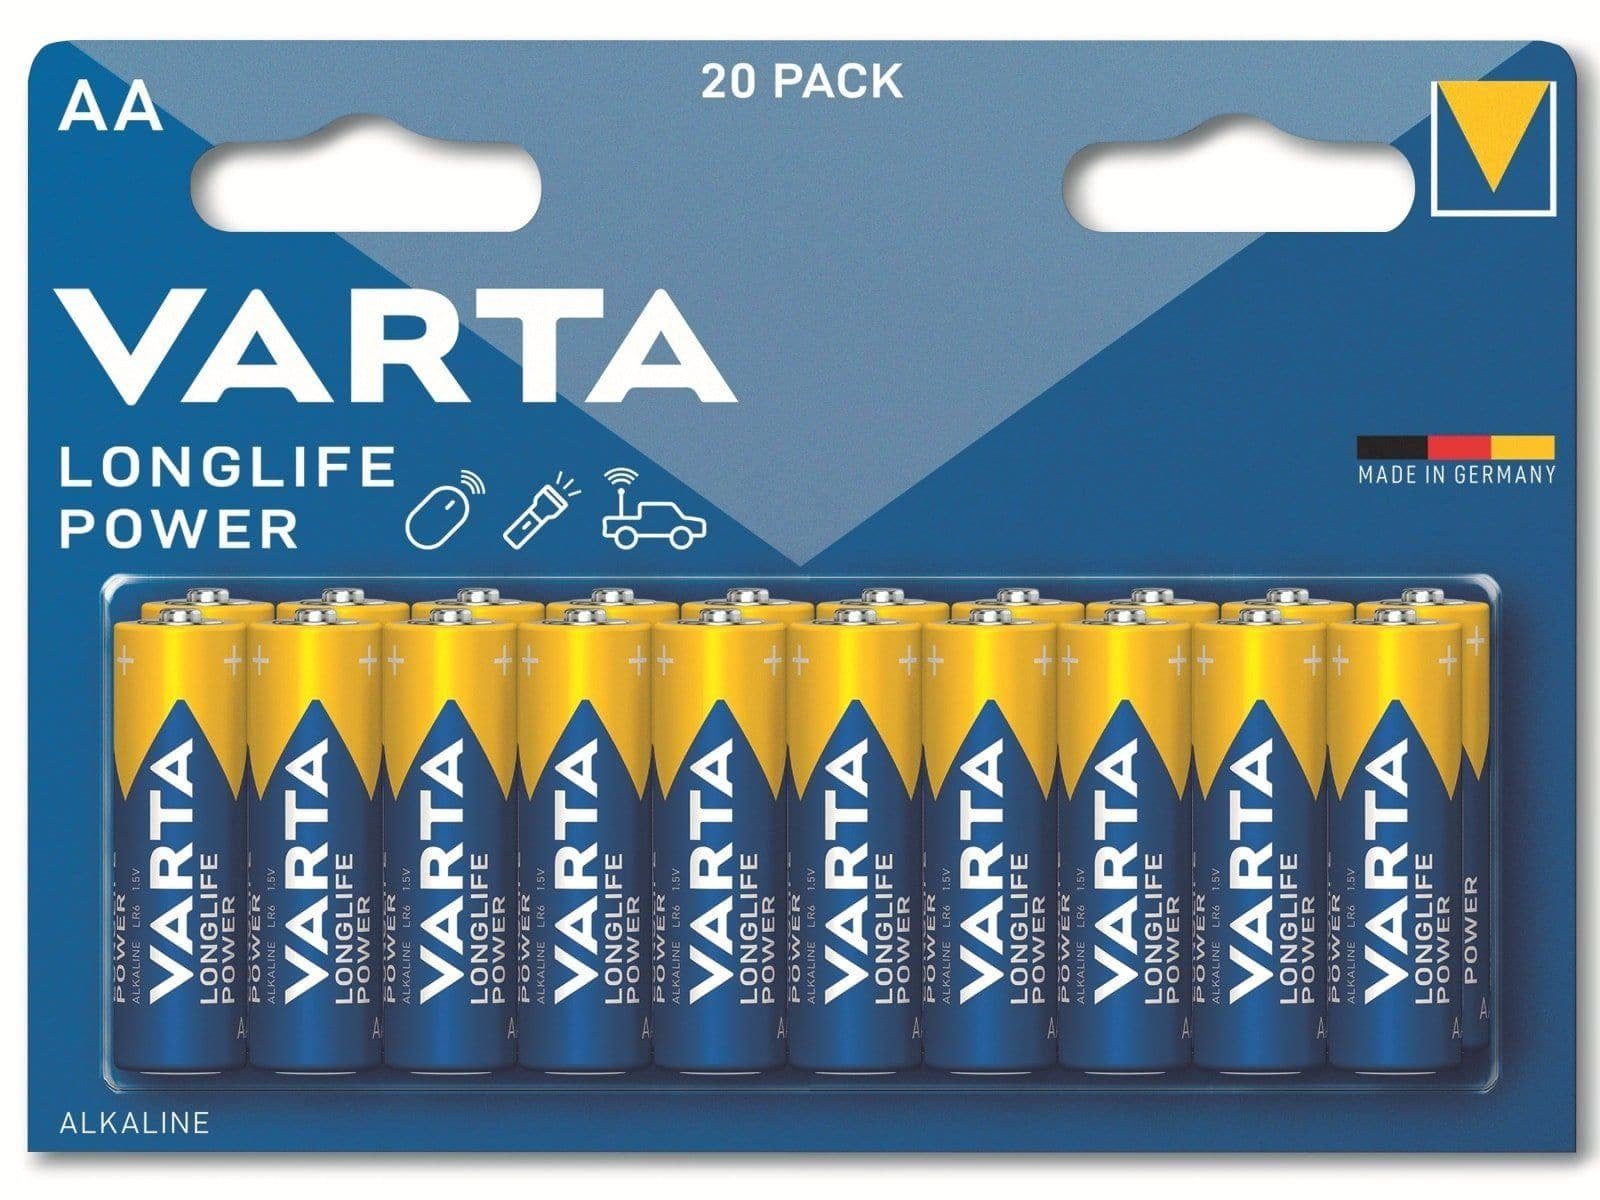 VARTA VARTA Batterie Alkaline, Mignon, AA, LR06, 1.5V Batterie